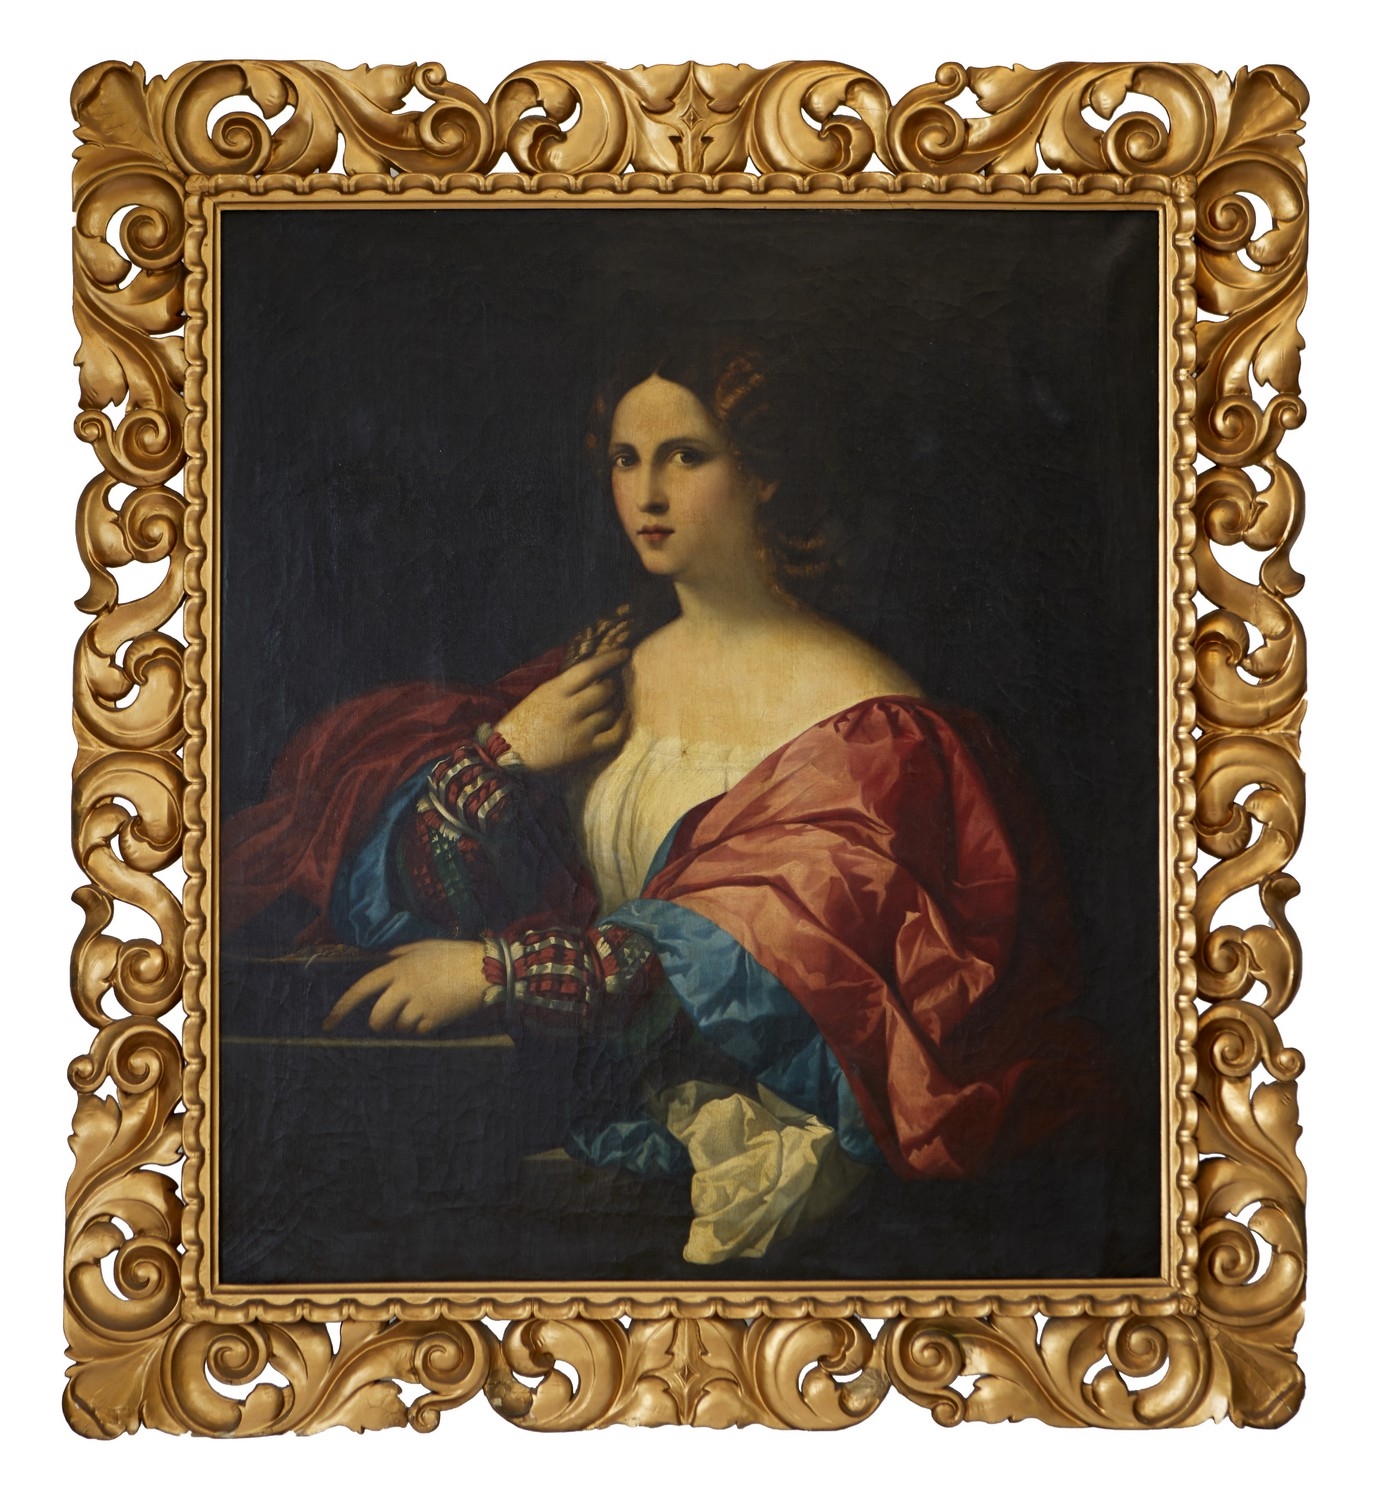 Portrait of a Woman by Jacopo Palma il Vecchio